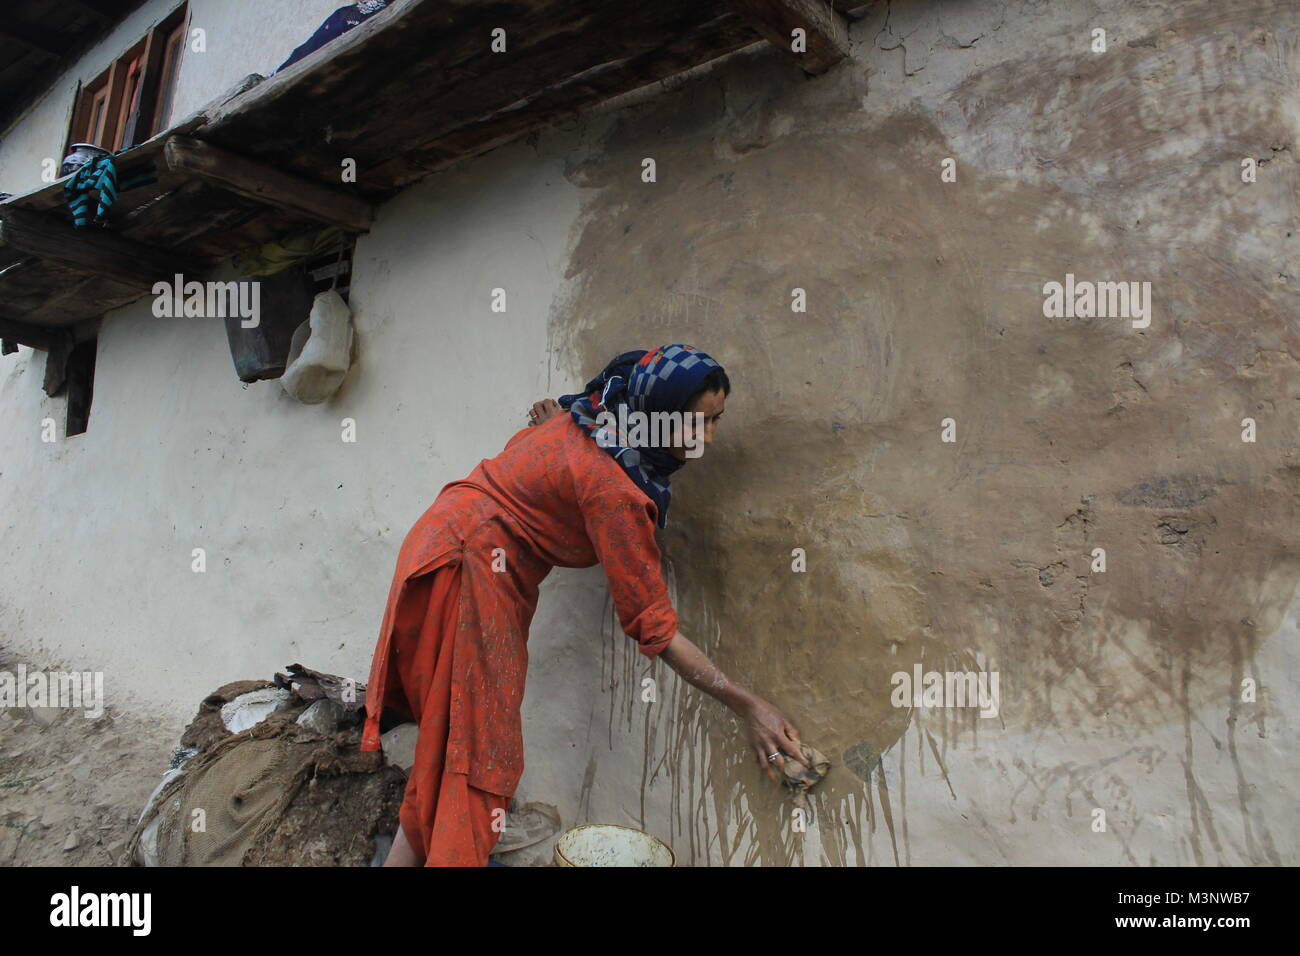 Femme du Cachemire l'application de la bouse de vache sur les murs, kupwara, Cachemire, Inde, Asie Banque D'Images